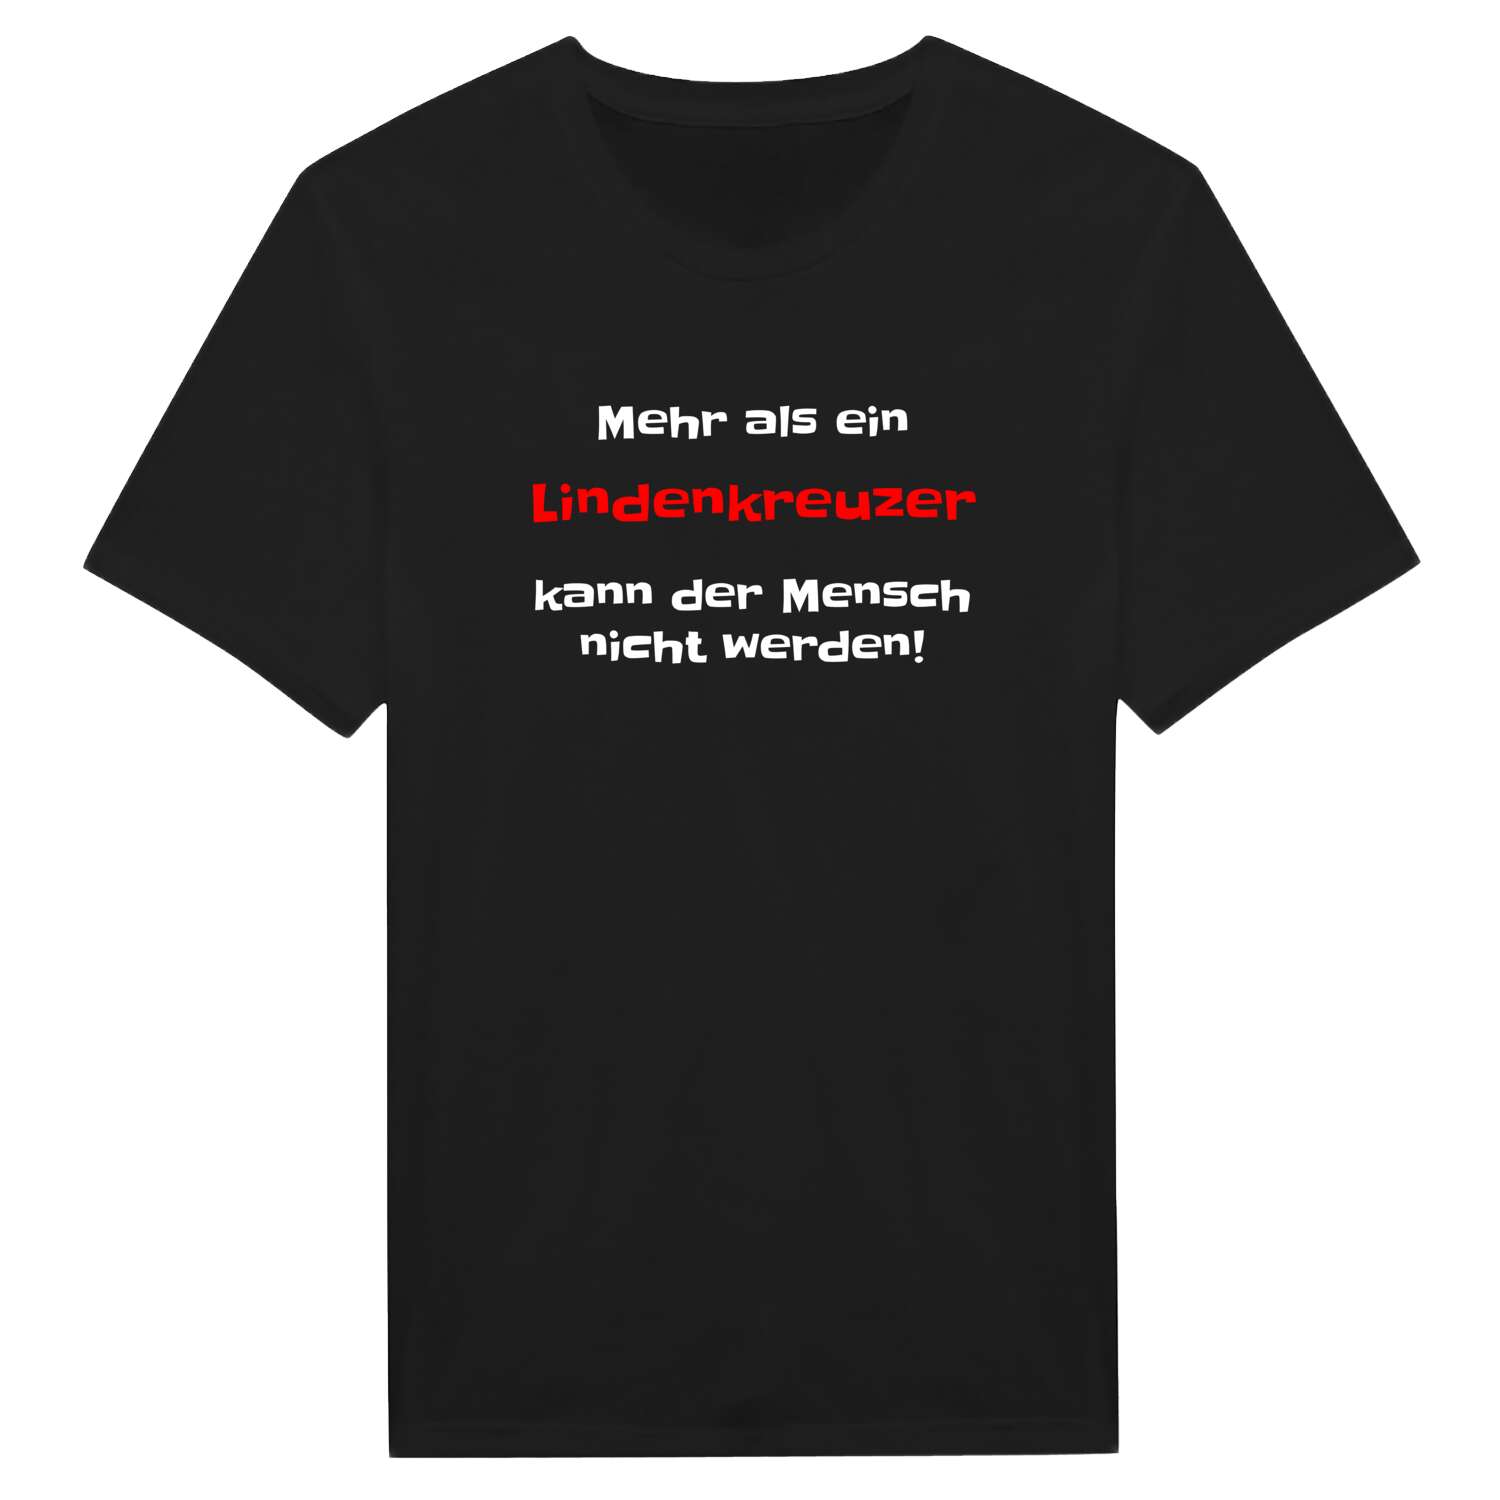 Lindenkreuz T-Shirt »Mehr als ein«